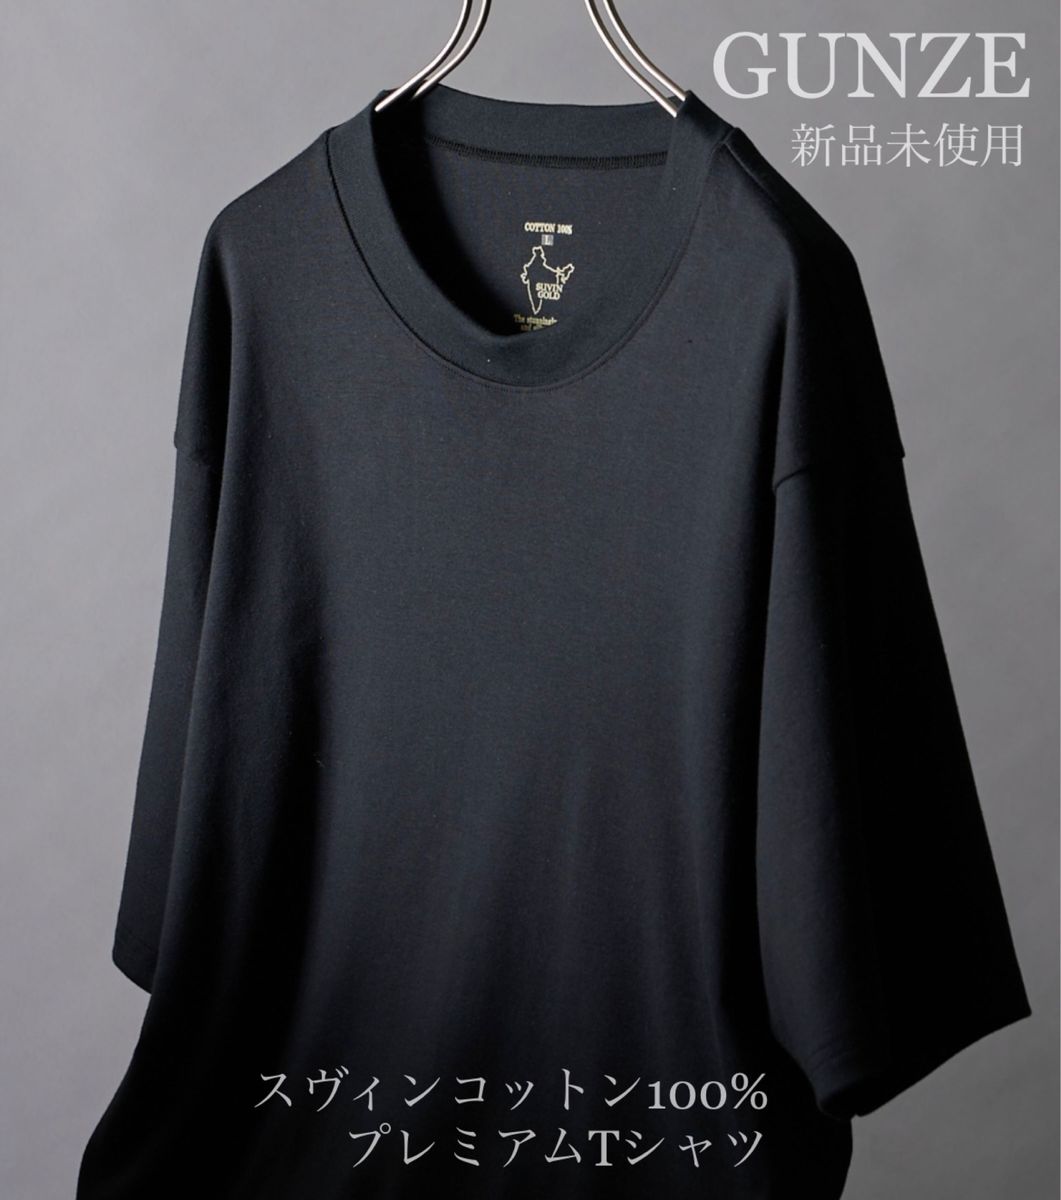 【新品未使用】GUNZE スヴィンコットン100% 半袖Tシャツ Mサイズ